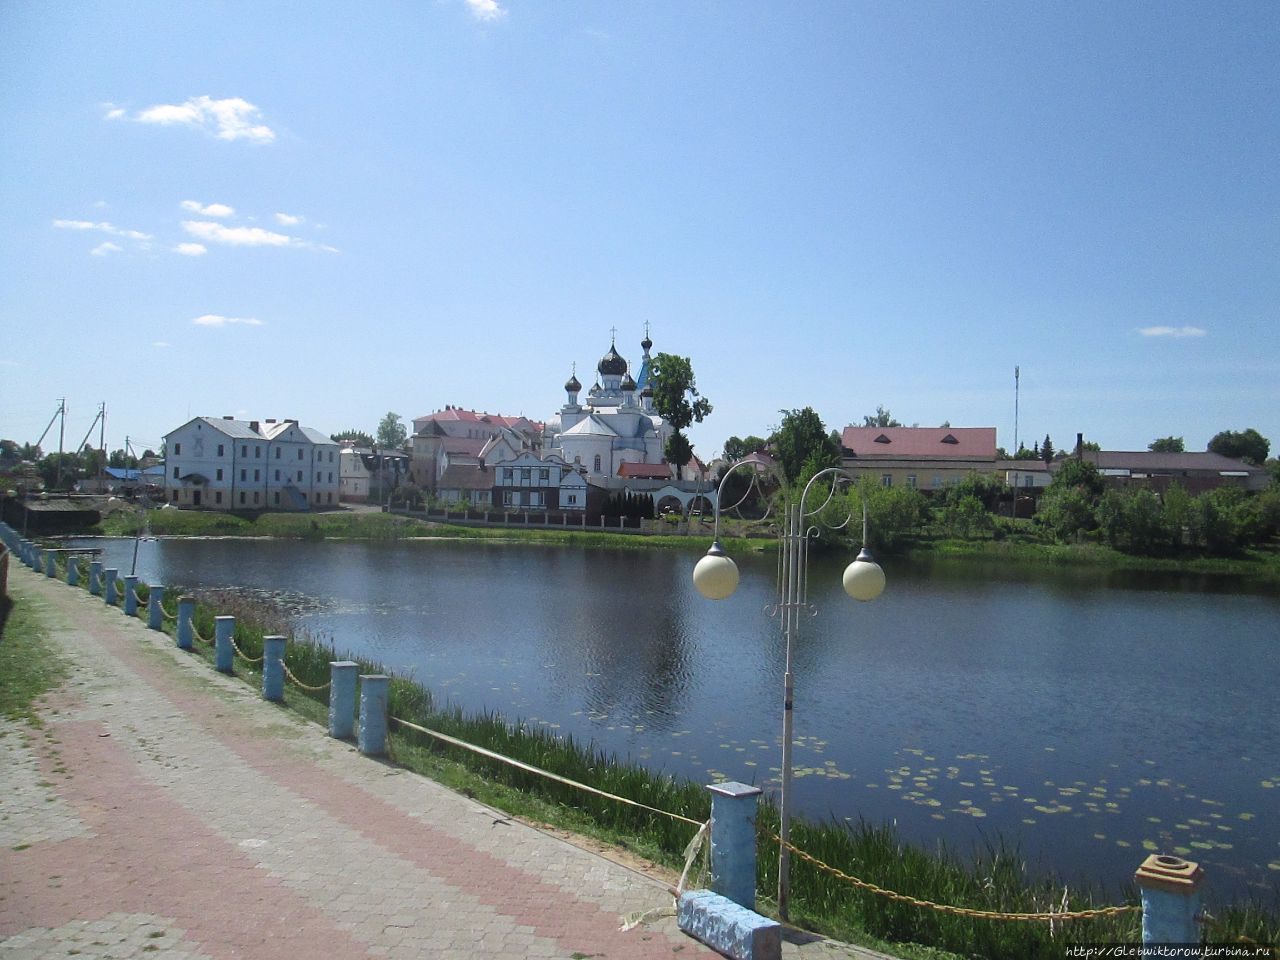 Костел святого Антония Падуанского Поставы, Беларусь